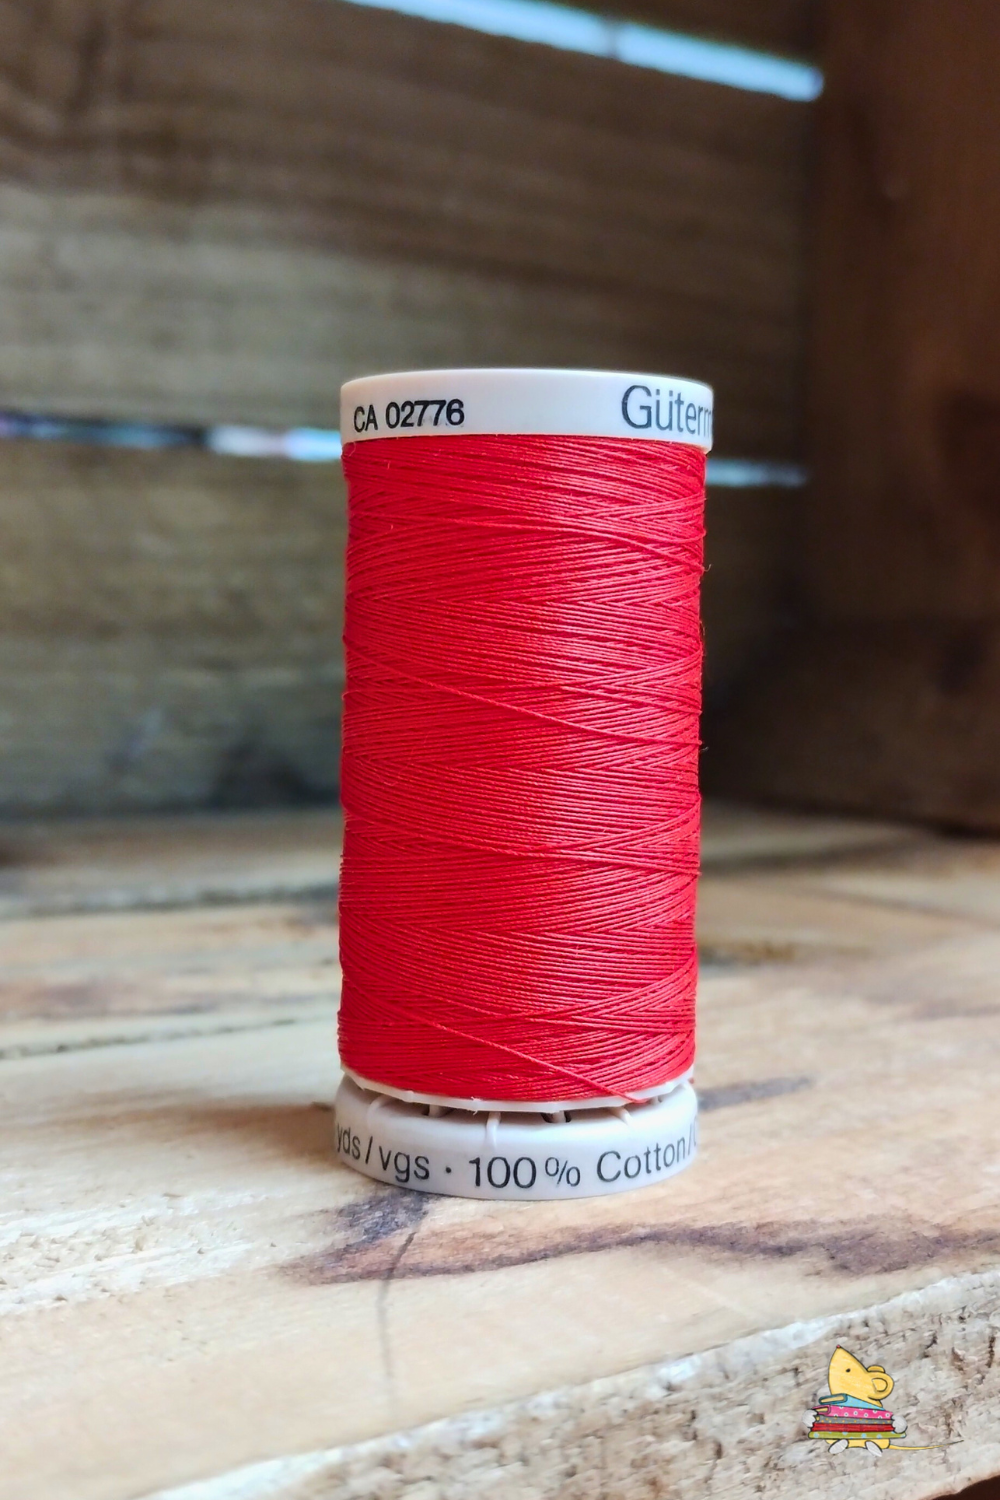 Gutermann 100% Cotton Hand Quilting Thread 200m (1974)